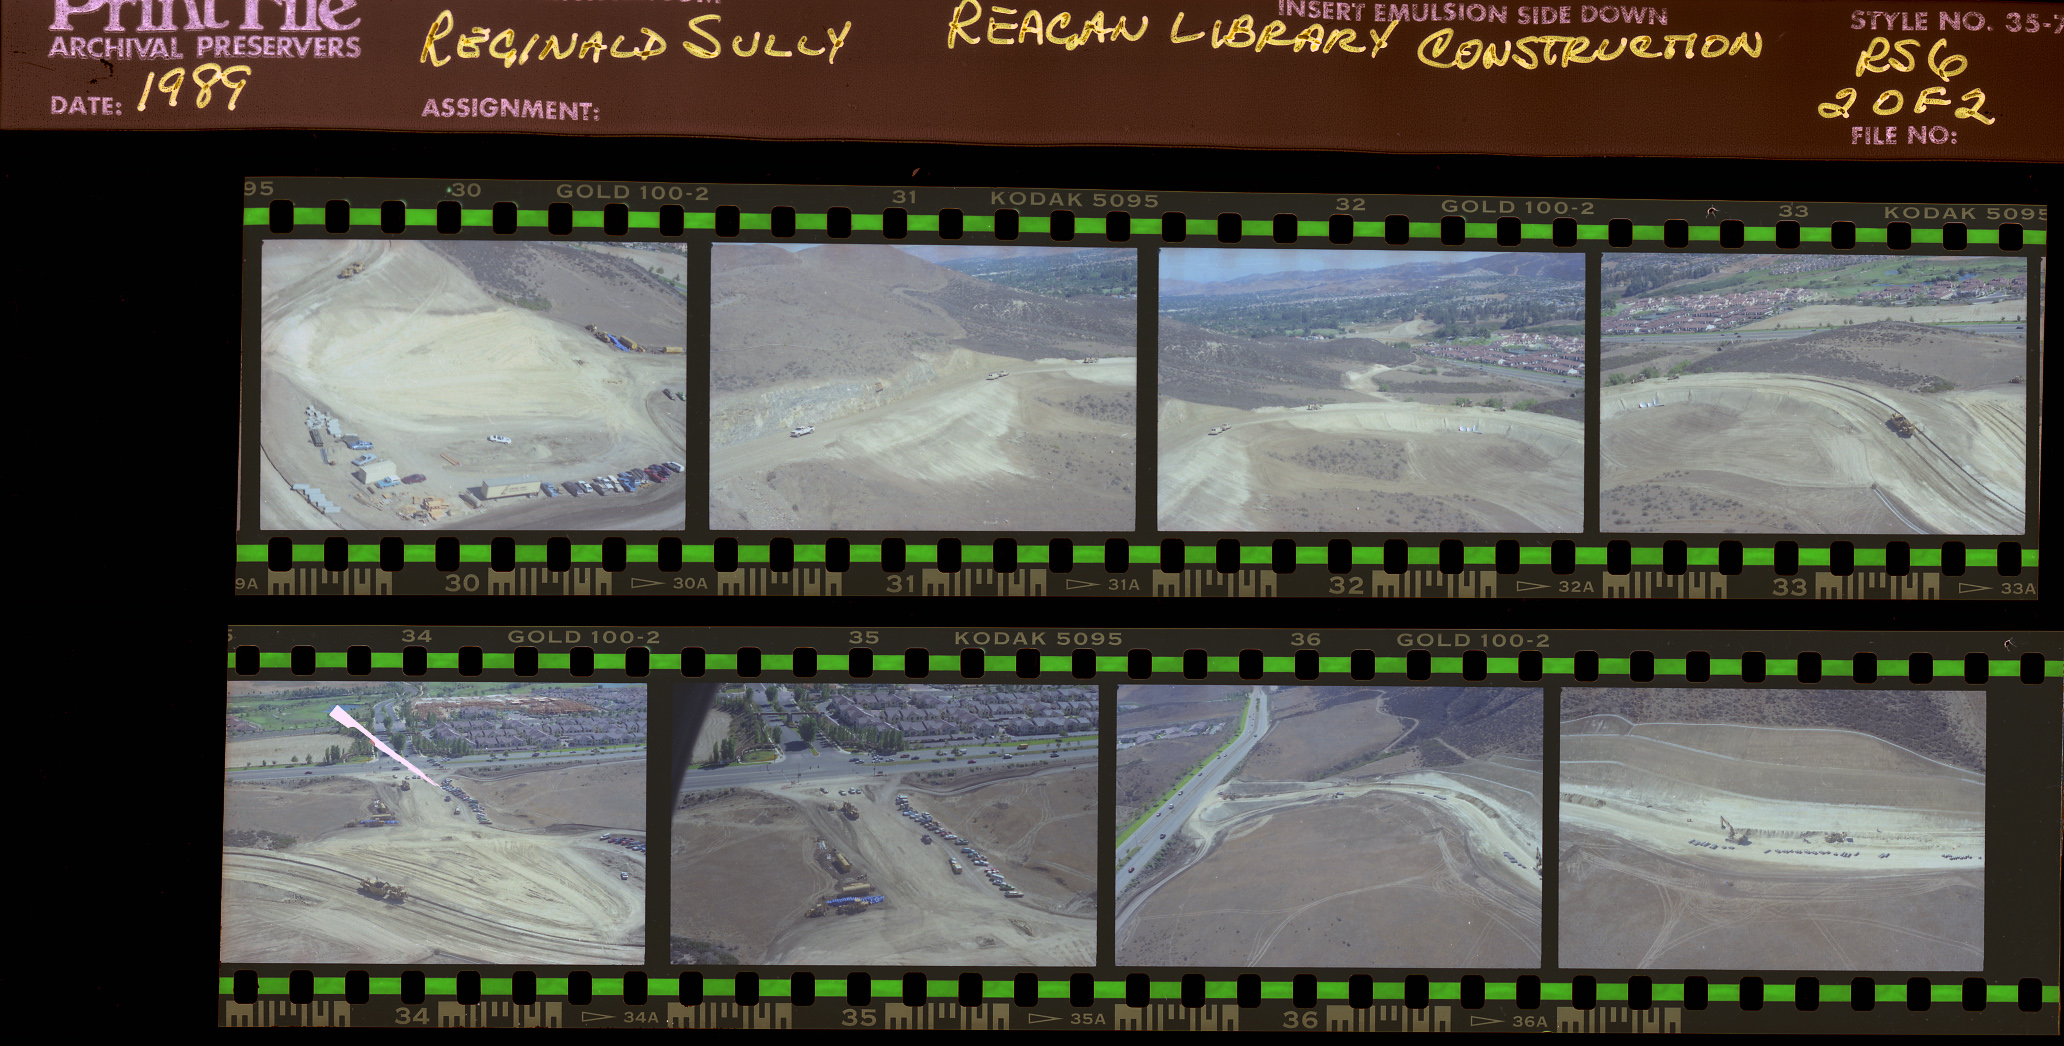 Construction of Reagan Presidential Library, aerial photos